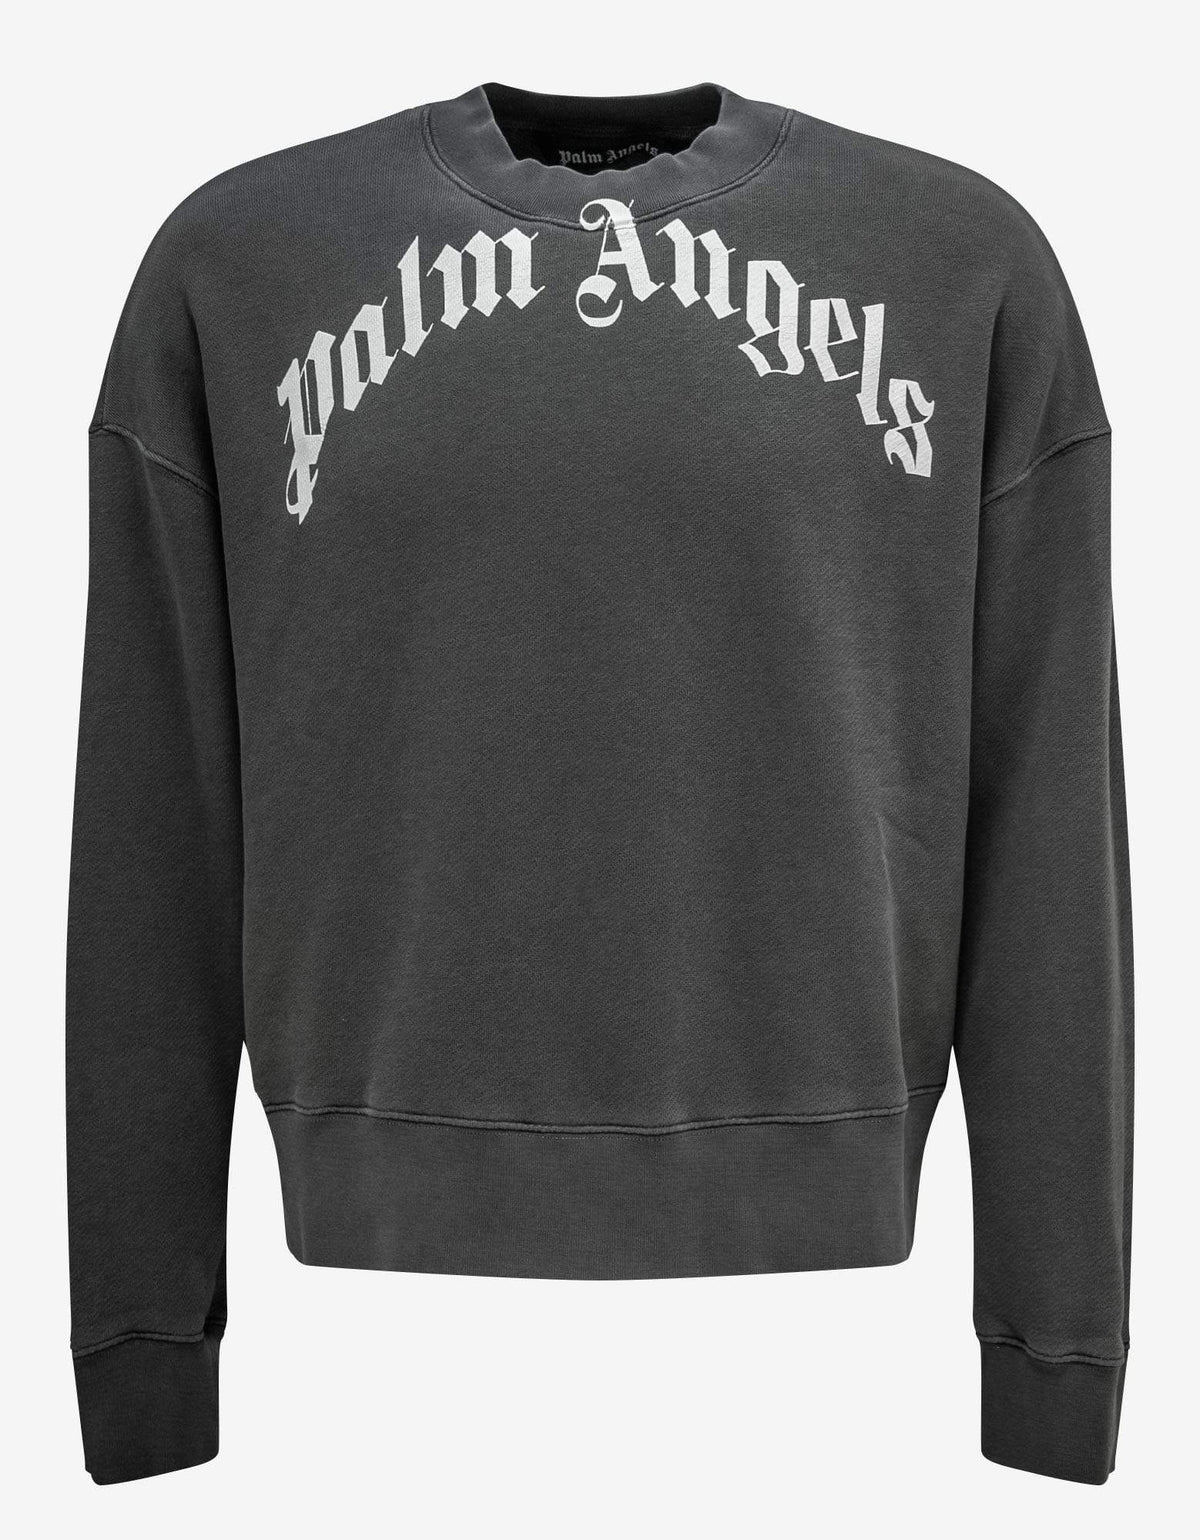 Palm Angels Grey Curved Logo Sweatshirt